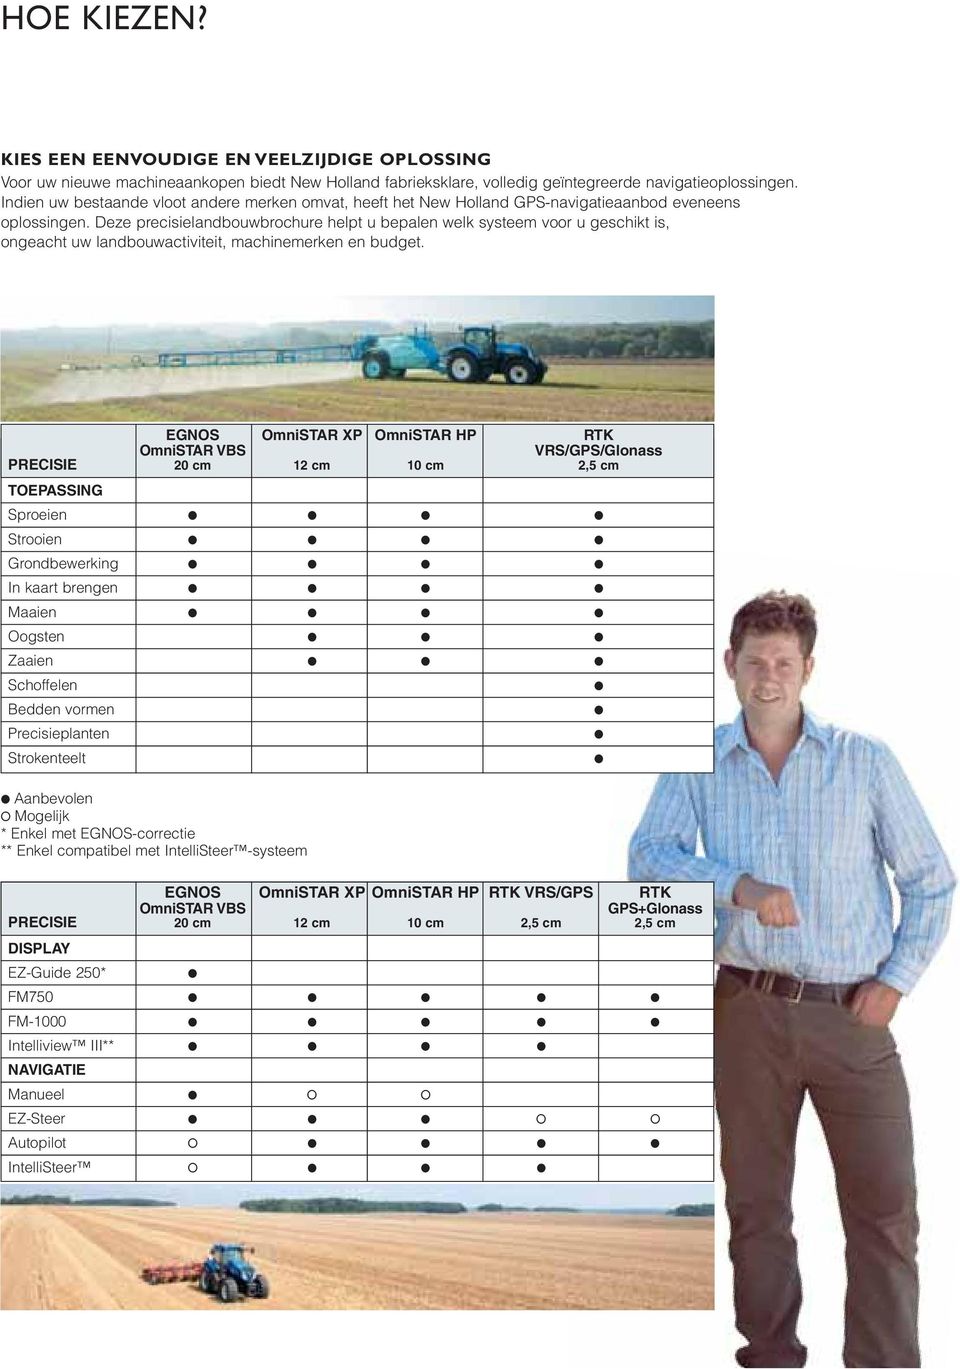 Deze precisielandbouwbrochure helpt u bepalen welk systeem voor u geschikt is, ongeacht uw landbouwactiviteit, machinemerken en budget.